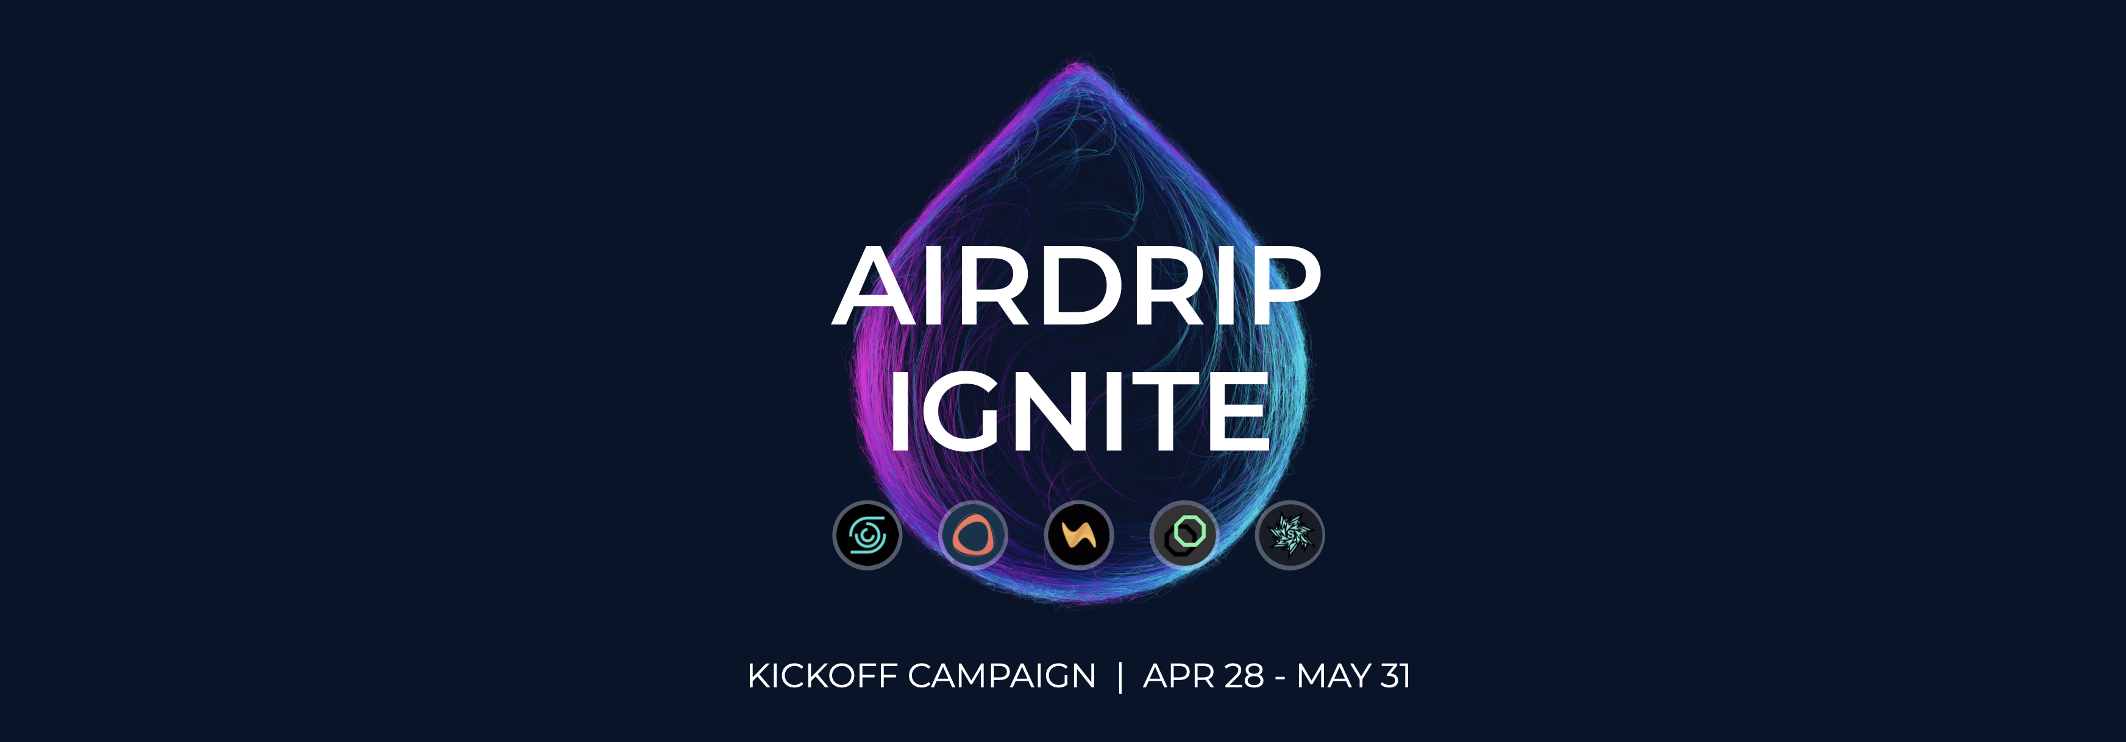 burn-drop-v2-tokenomics-kickoff-airdrip-ignite-apr-28-may-31